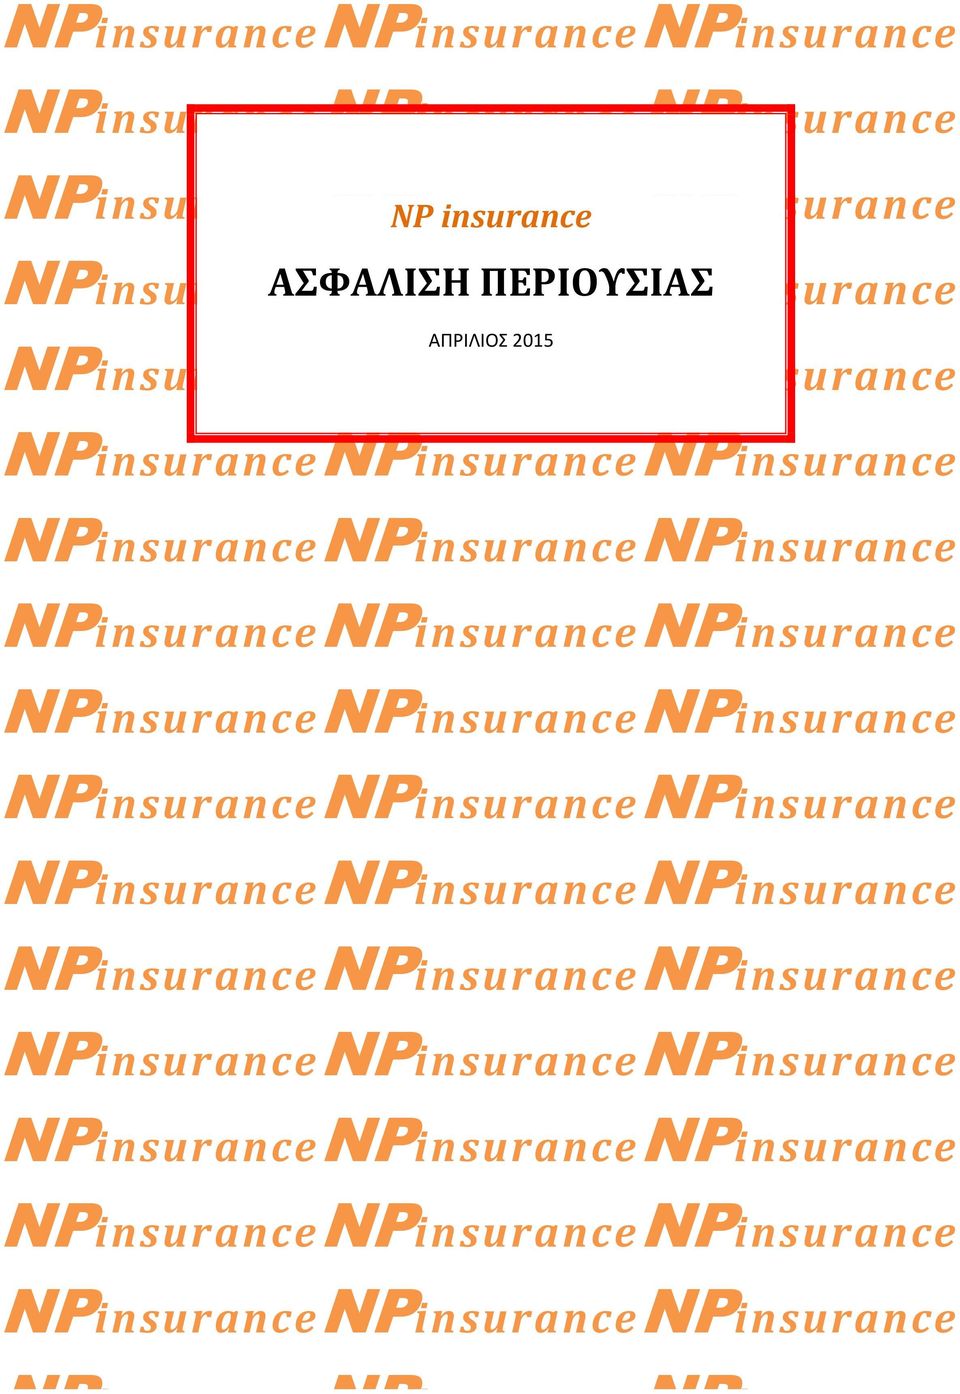 NPinsuranceNPinsuranceNPinsurance NPinsuranceNPinsuranceNPinsurance NPinsuranceNPinsuranceNPinsurance NPinsuranceNPinsuranceNPinsurance